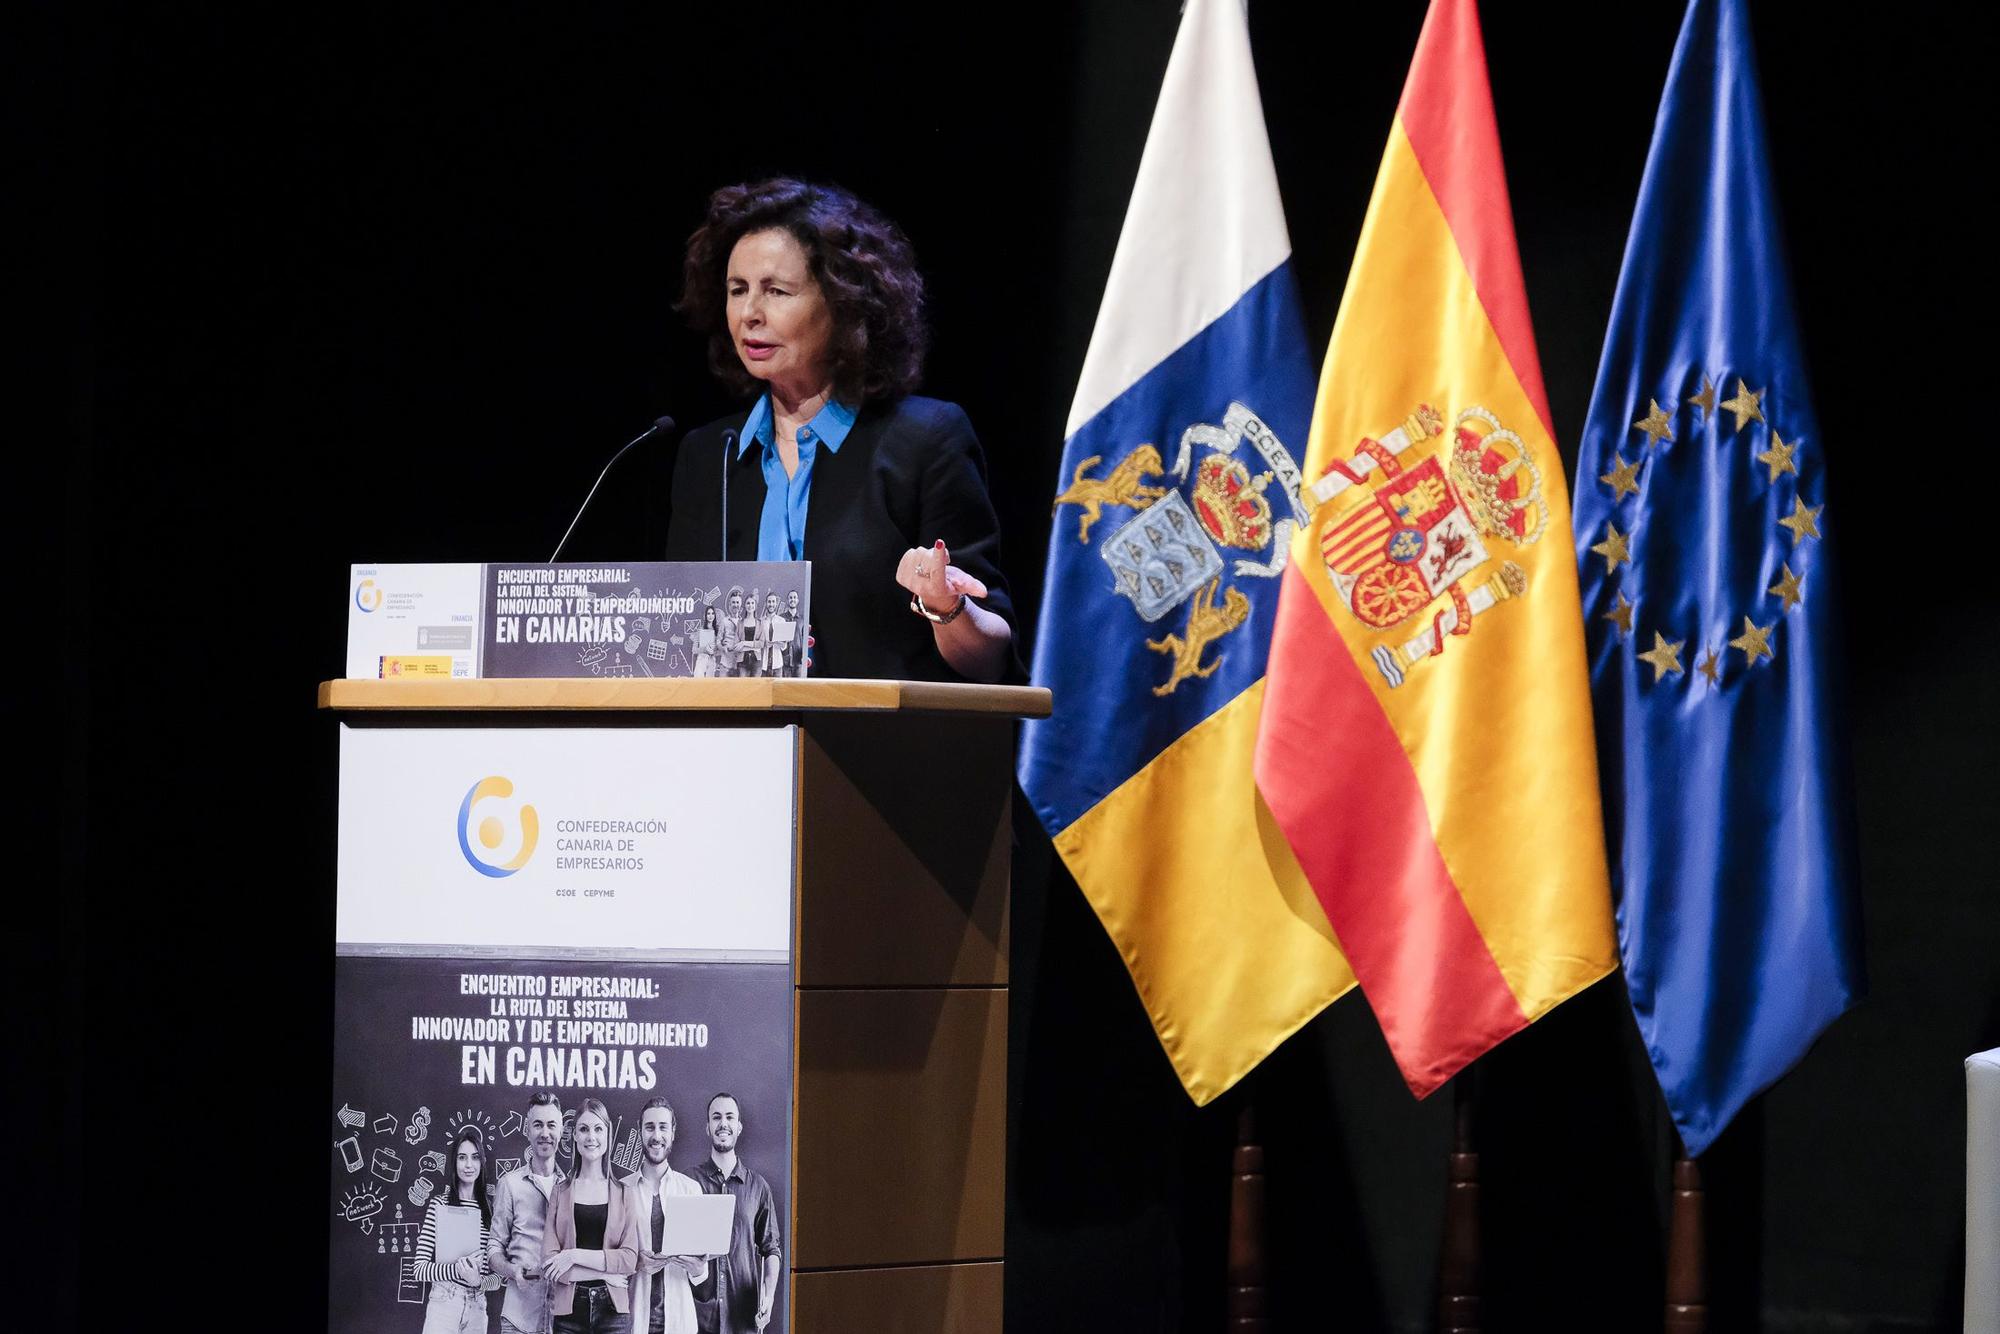 Encuentro Empresarial 'La Ruta del Sistema Innovador y de Emprendimiento en Canarias'